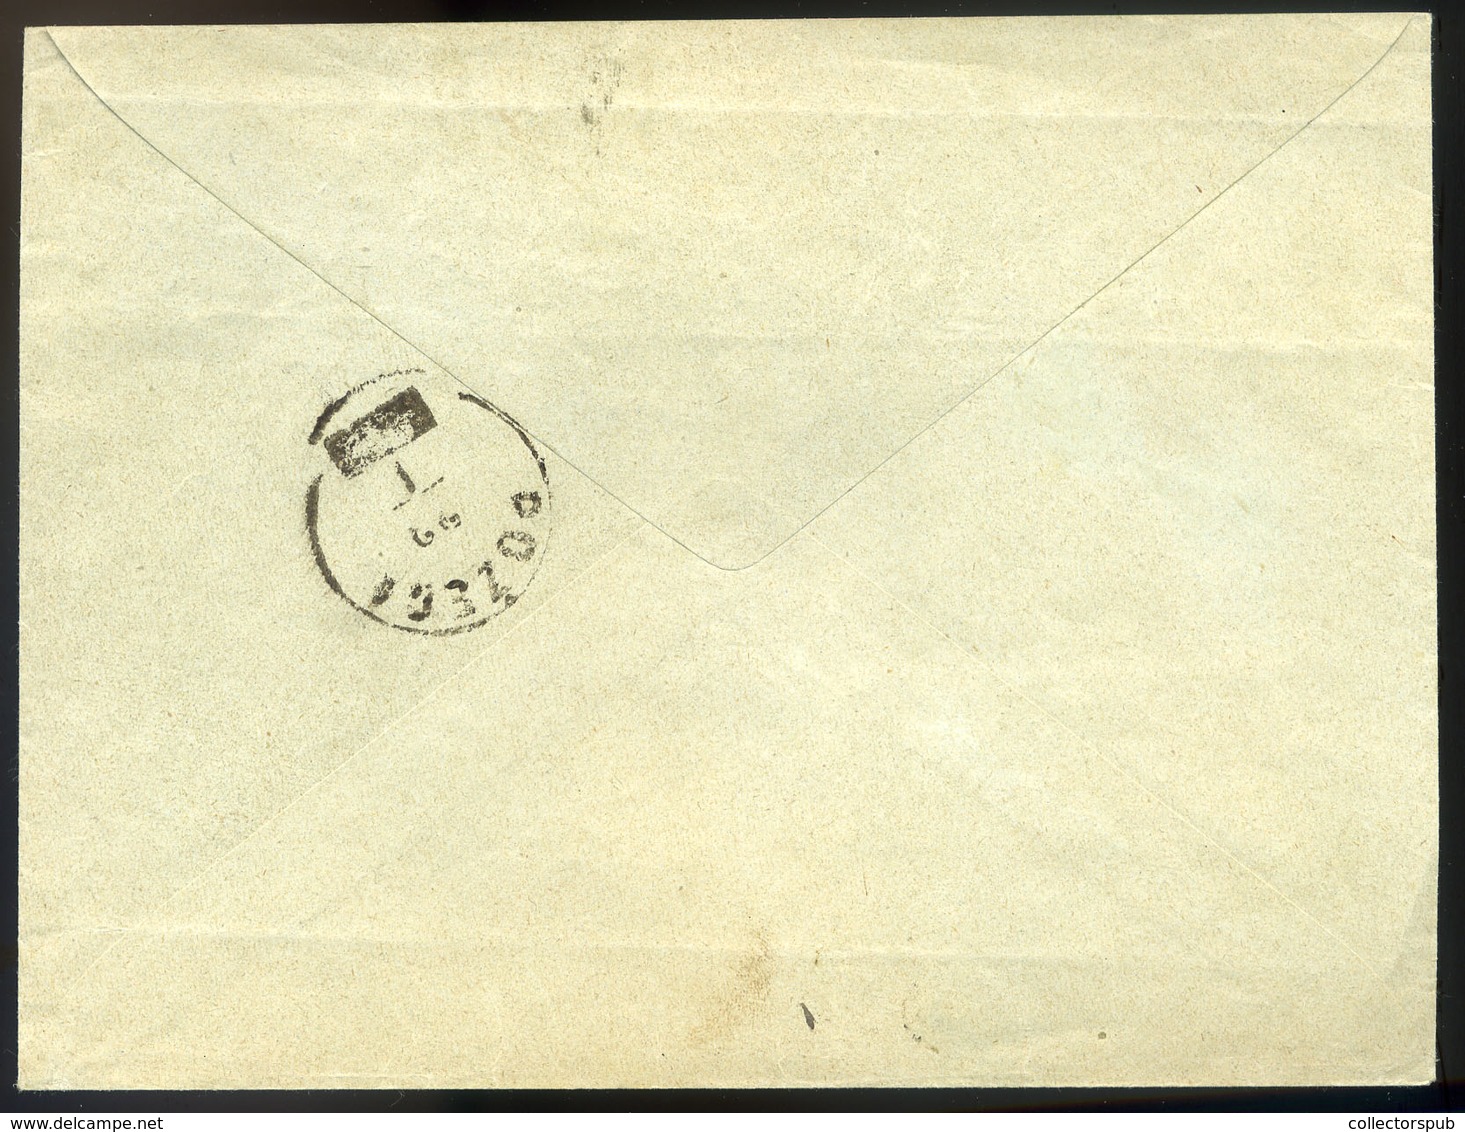 97187 ORIOVAC 1894. Ajánlott Levél 10kr Pár, Pozegára Küldve  /  ORIOVAC 1894 Reg. Letter 10Kr Pair To Pozega - Used Stamps